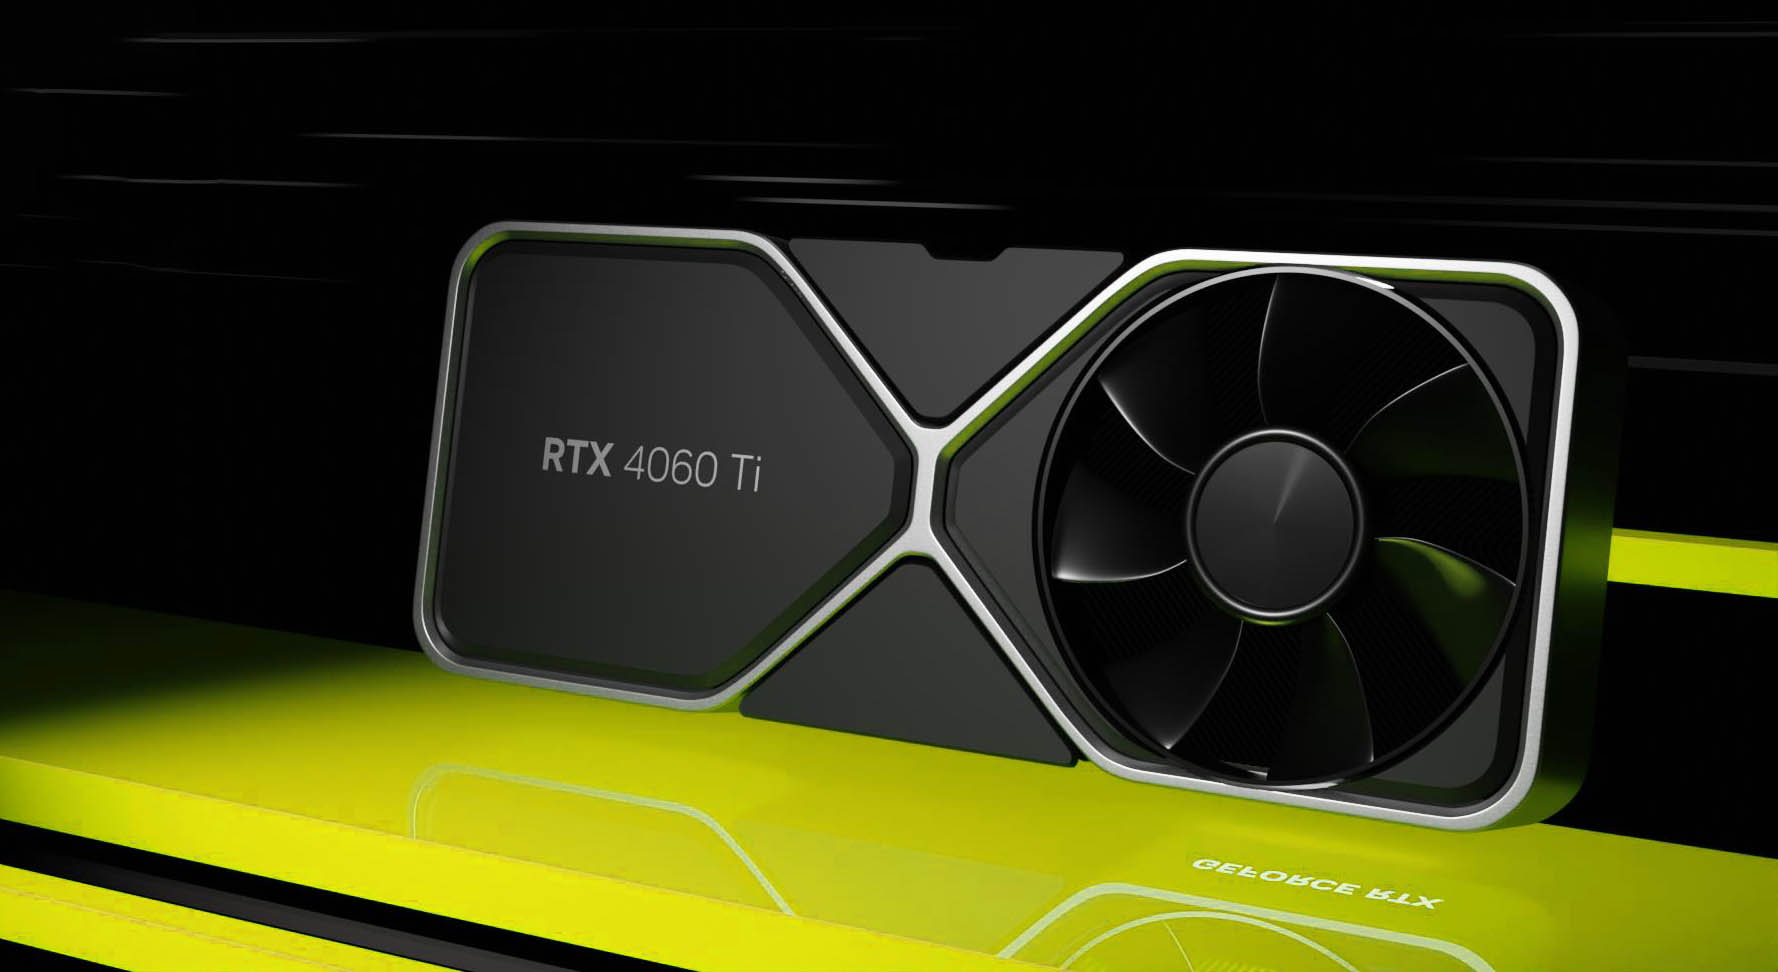 NVIDIA GeForce RTX 4060 Ti będzie wyposażony w 8/16GB VRAM, 4352 rdzenie CUDA, przepustowość 288GB/s i TDP do 165W.